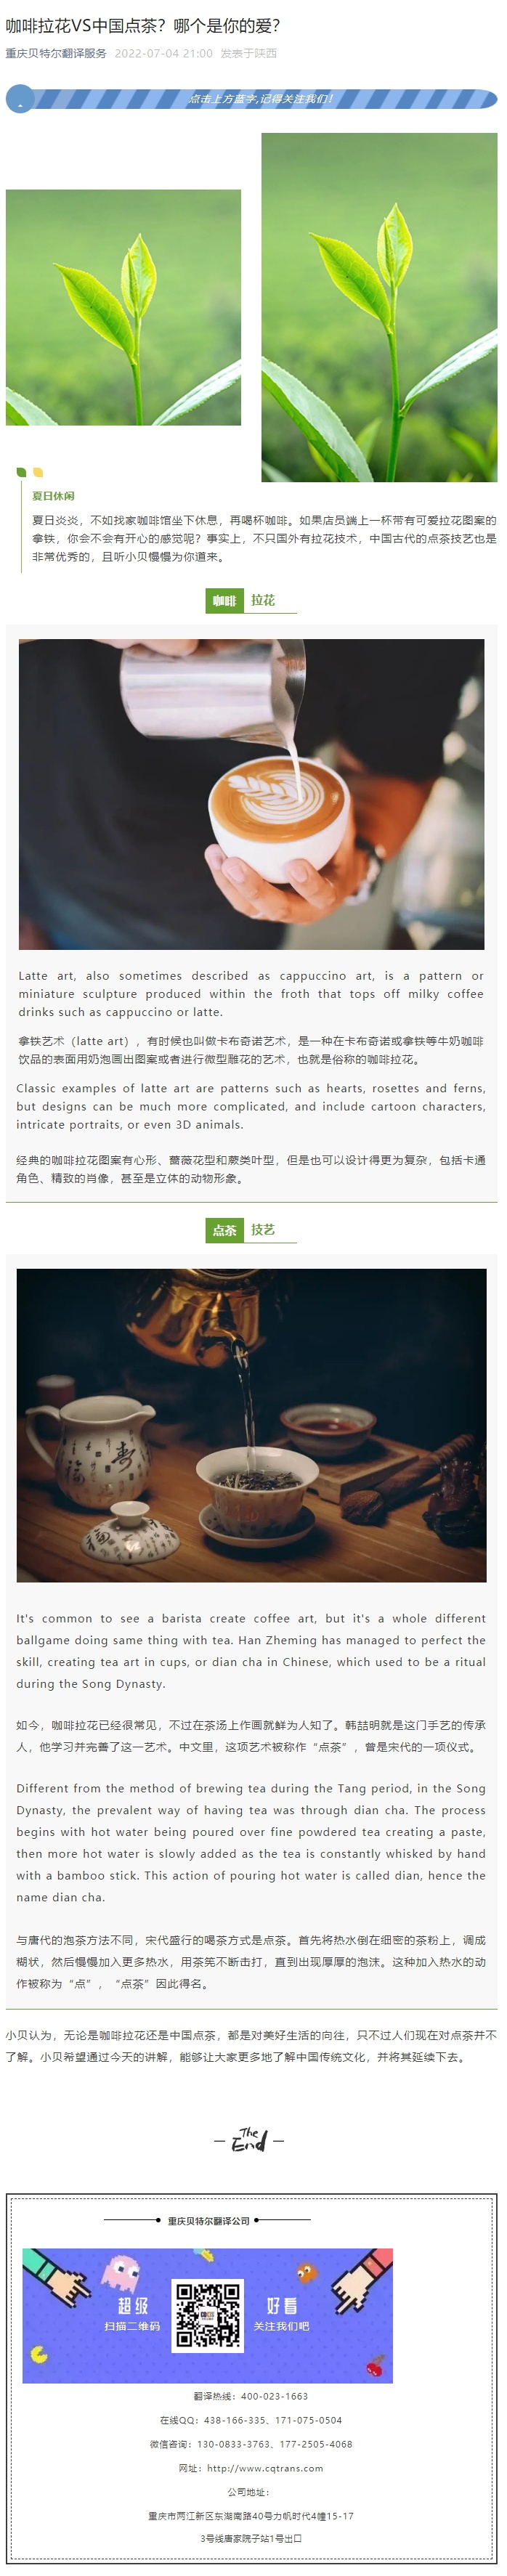 咖啡拉花VS中国点茶？哪个是你的爱？_看图王.jpg